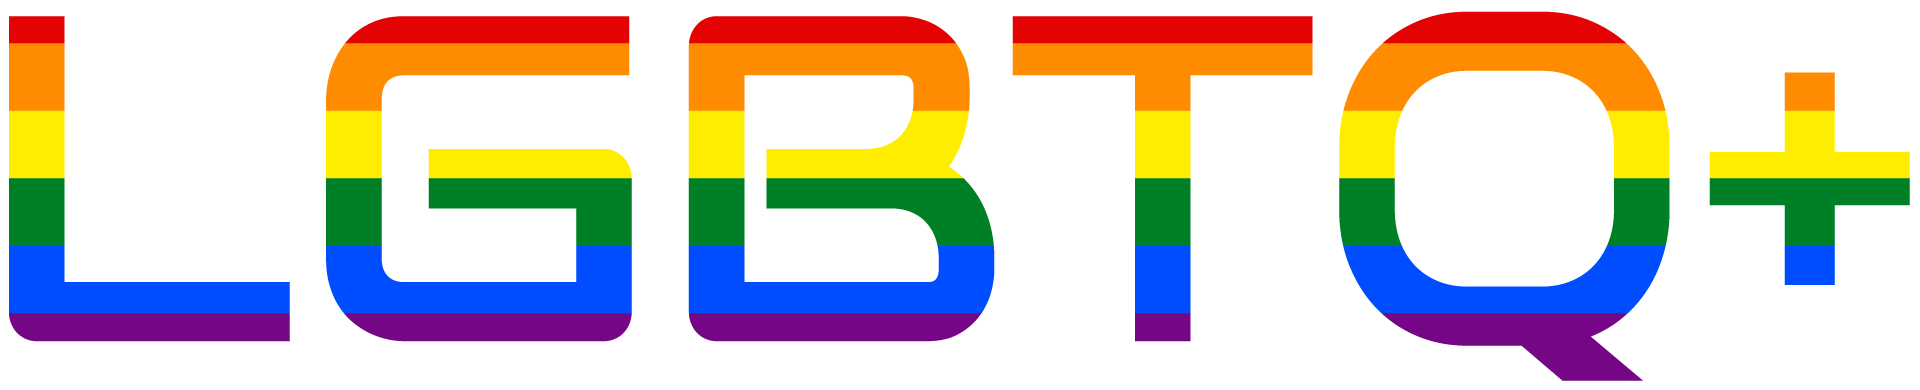 lgbtq gayrights gay freetoedit sticker by @helloworld1357